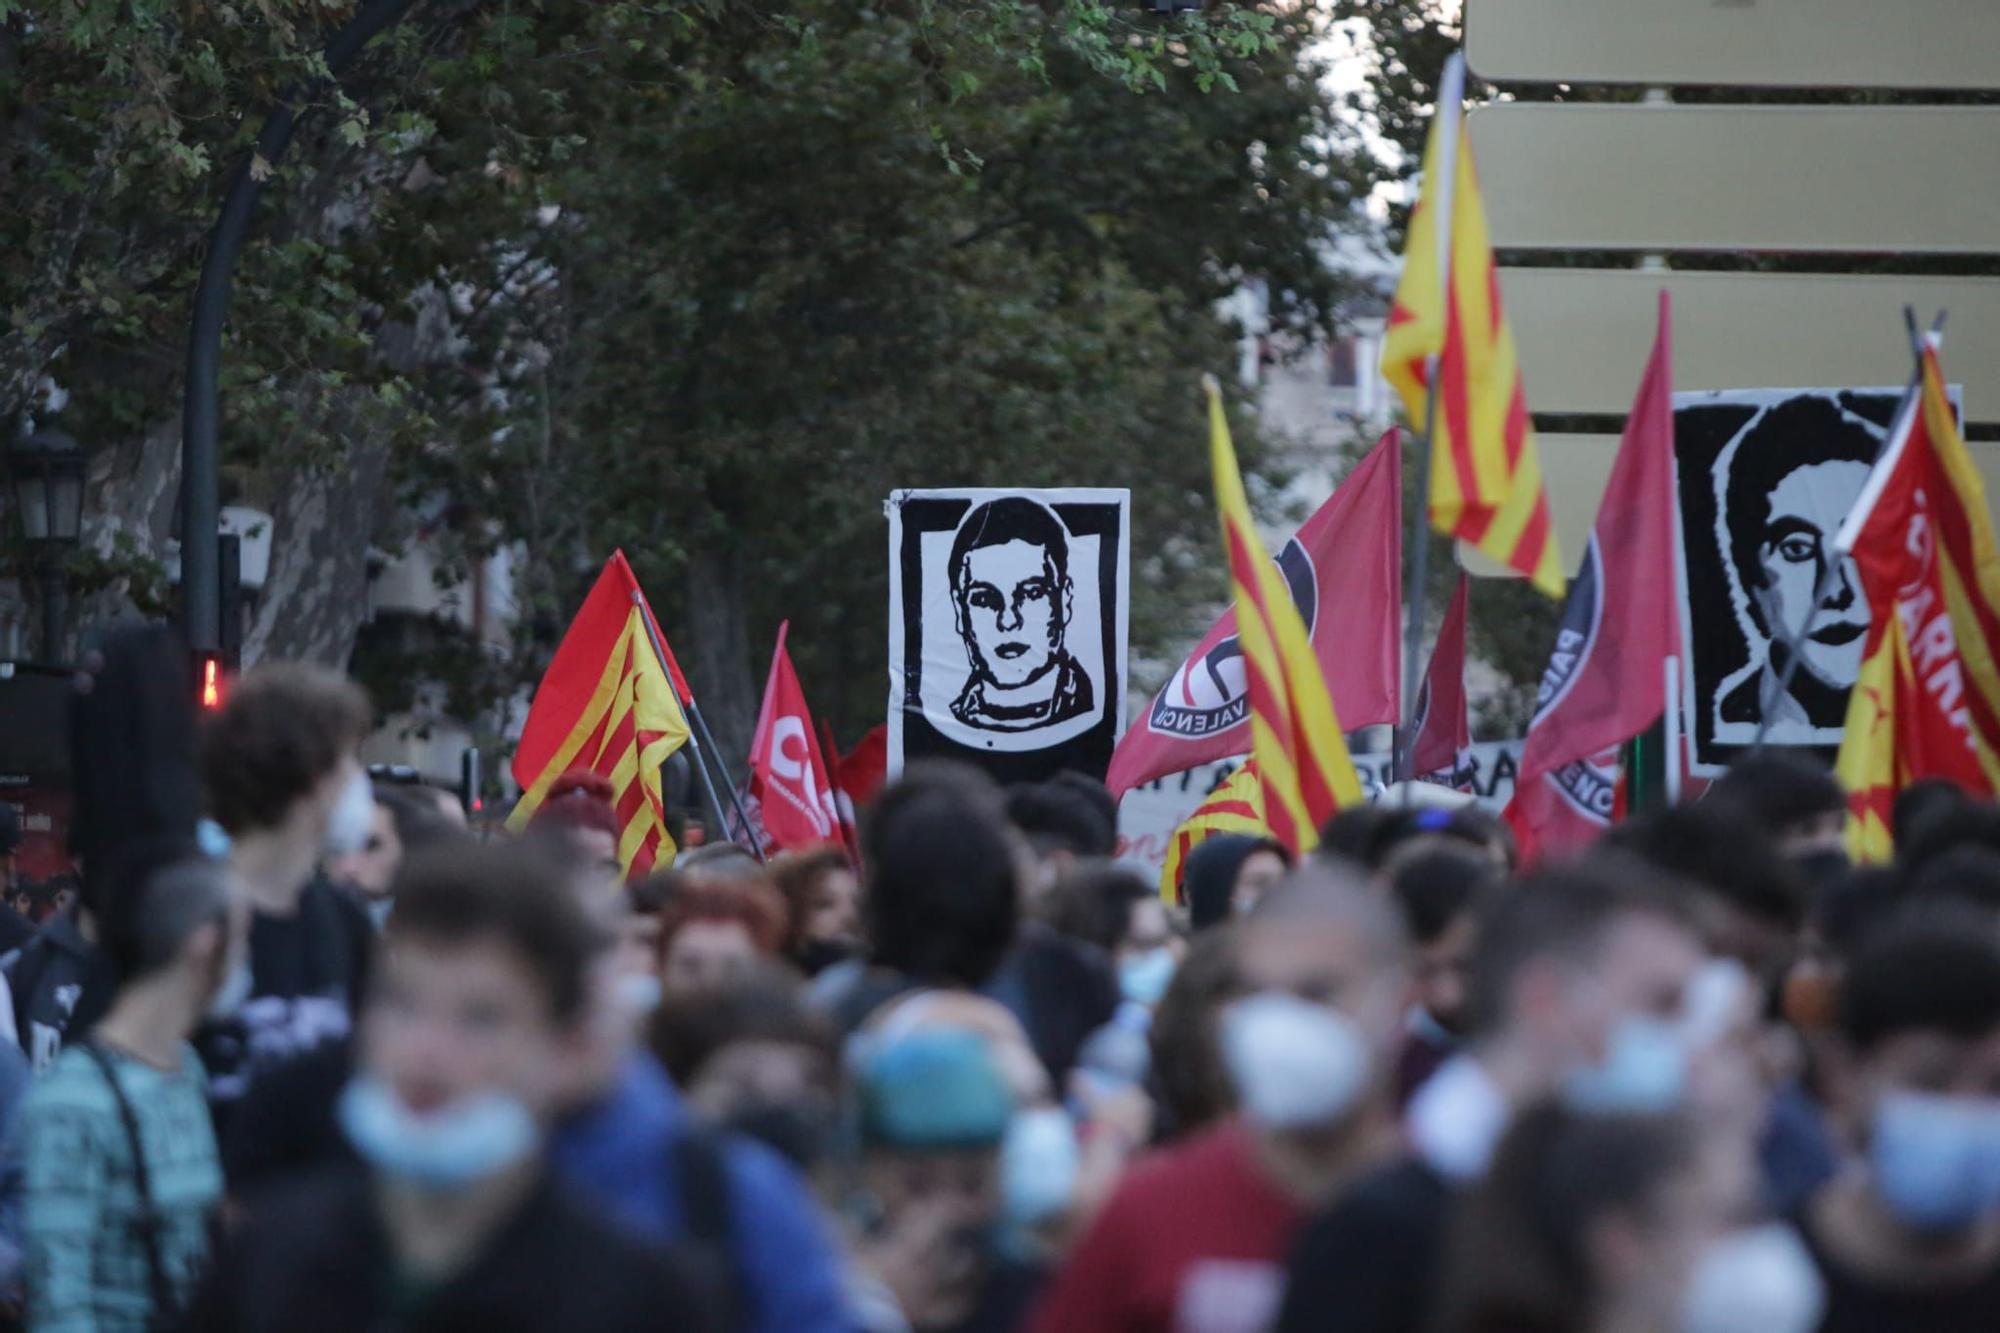 Así han sido las manifestaciones antifascistas del 9 d'Octubre en València